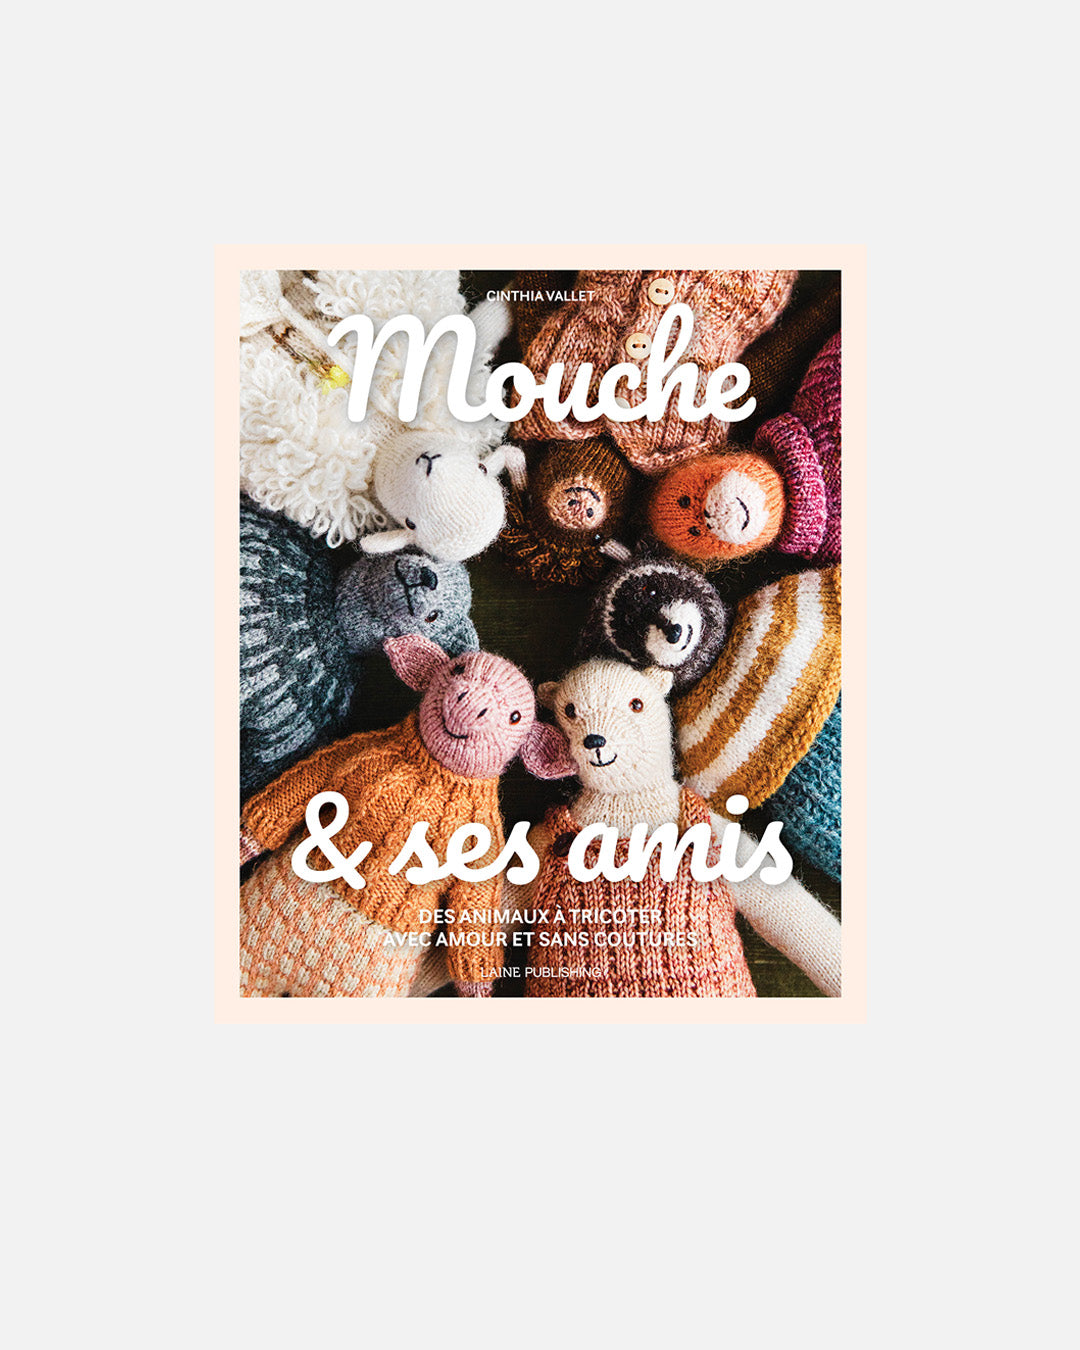 Mouche & Friends